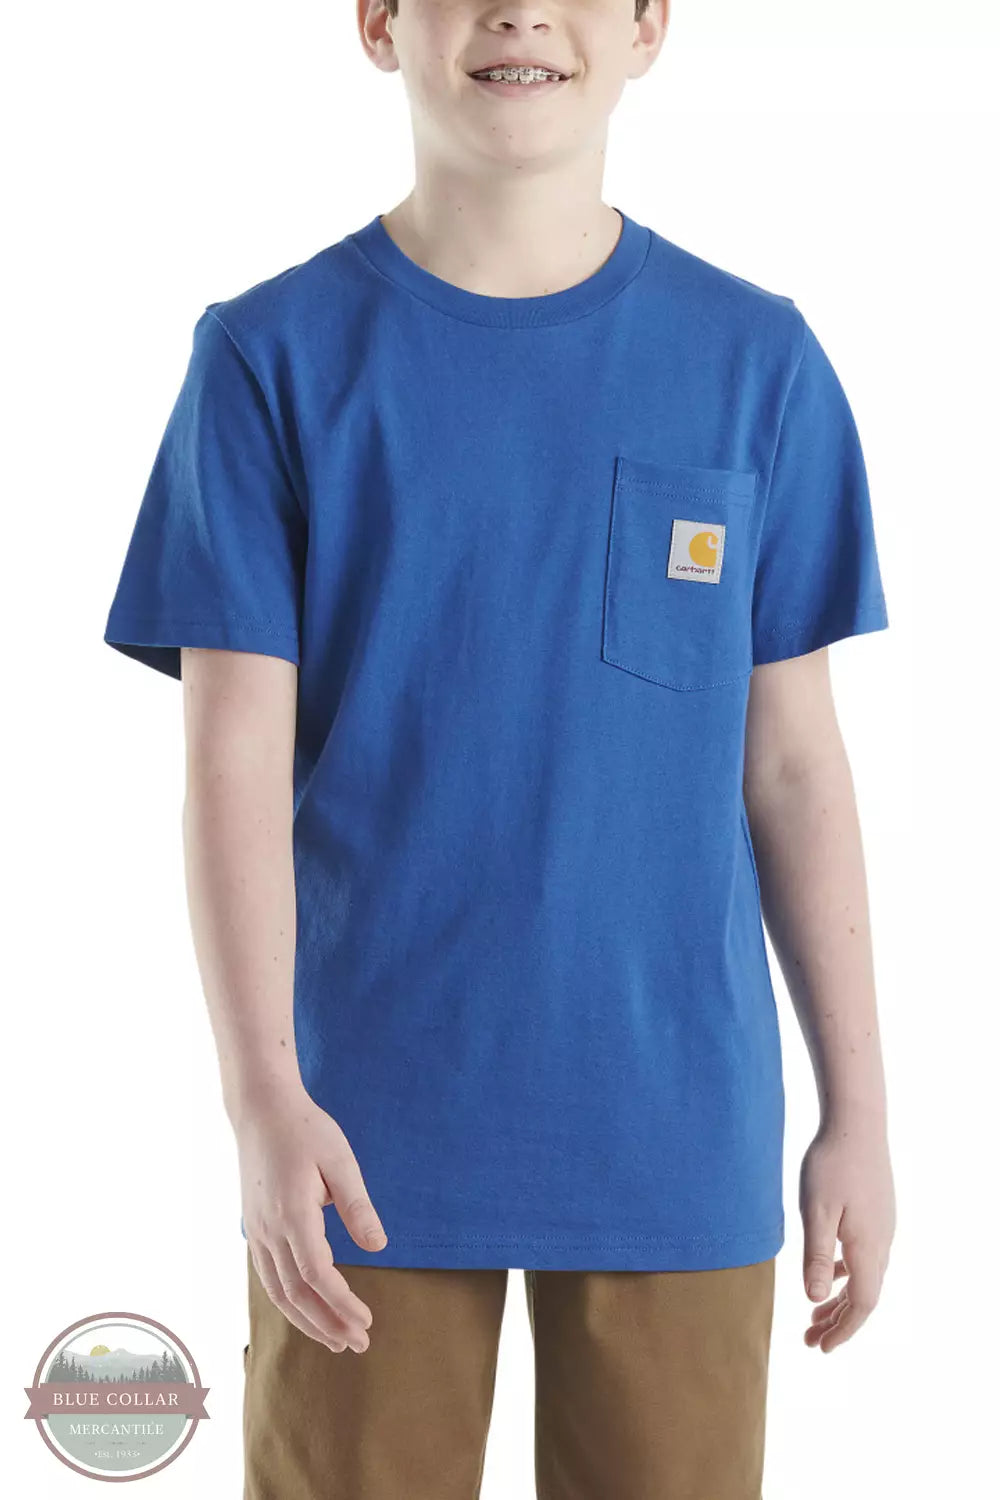 Carhartt CA6437 Short Sleeve Pocket T-Shirt Galaxy Blue Front View